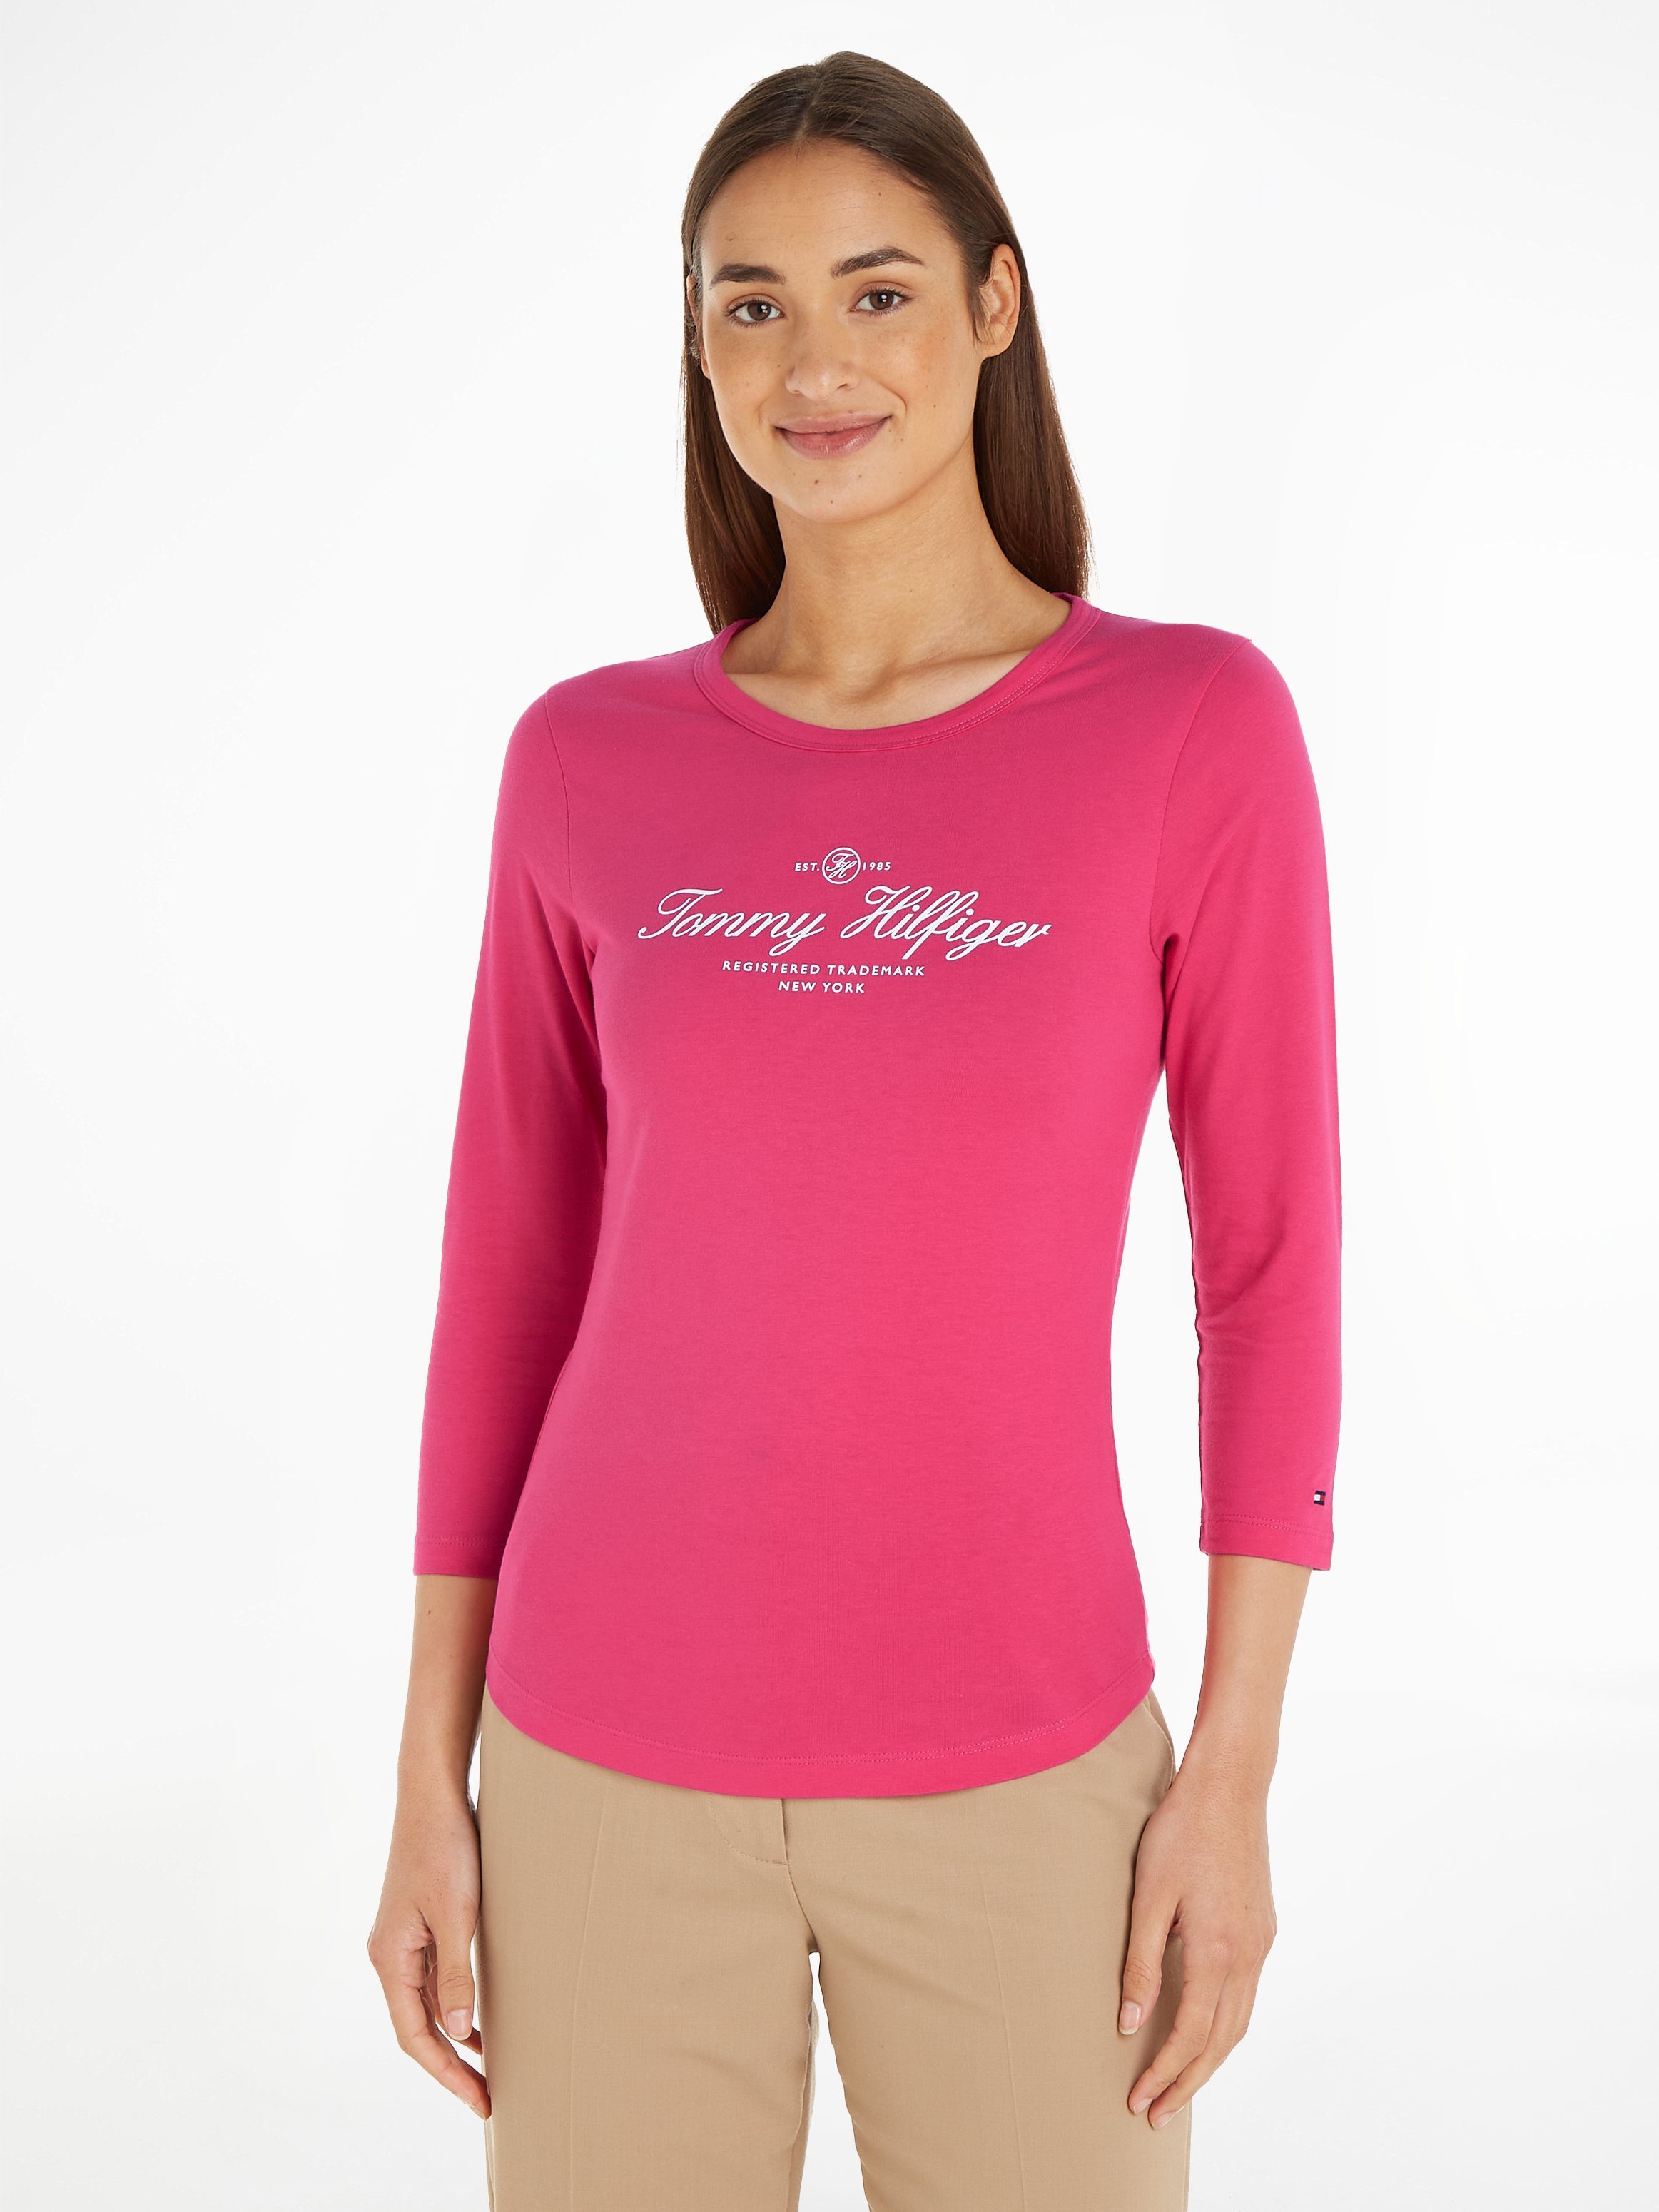 Rosa Tommy Hilfiger Shirts für Damen online kaufen | OTTO